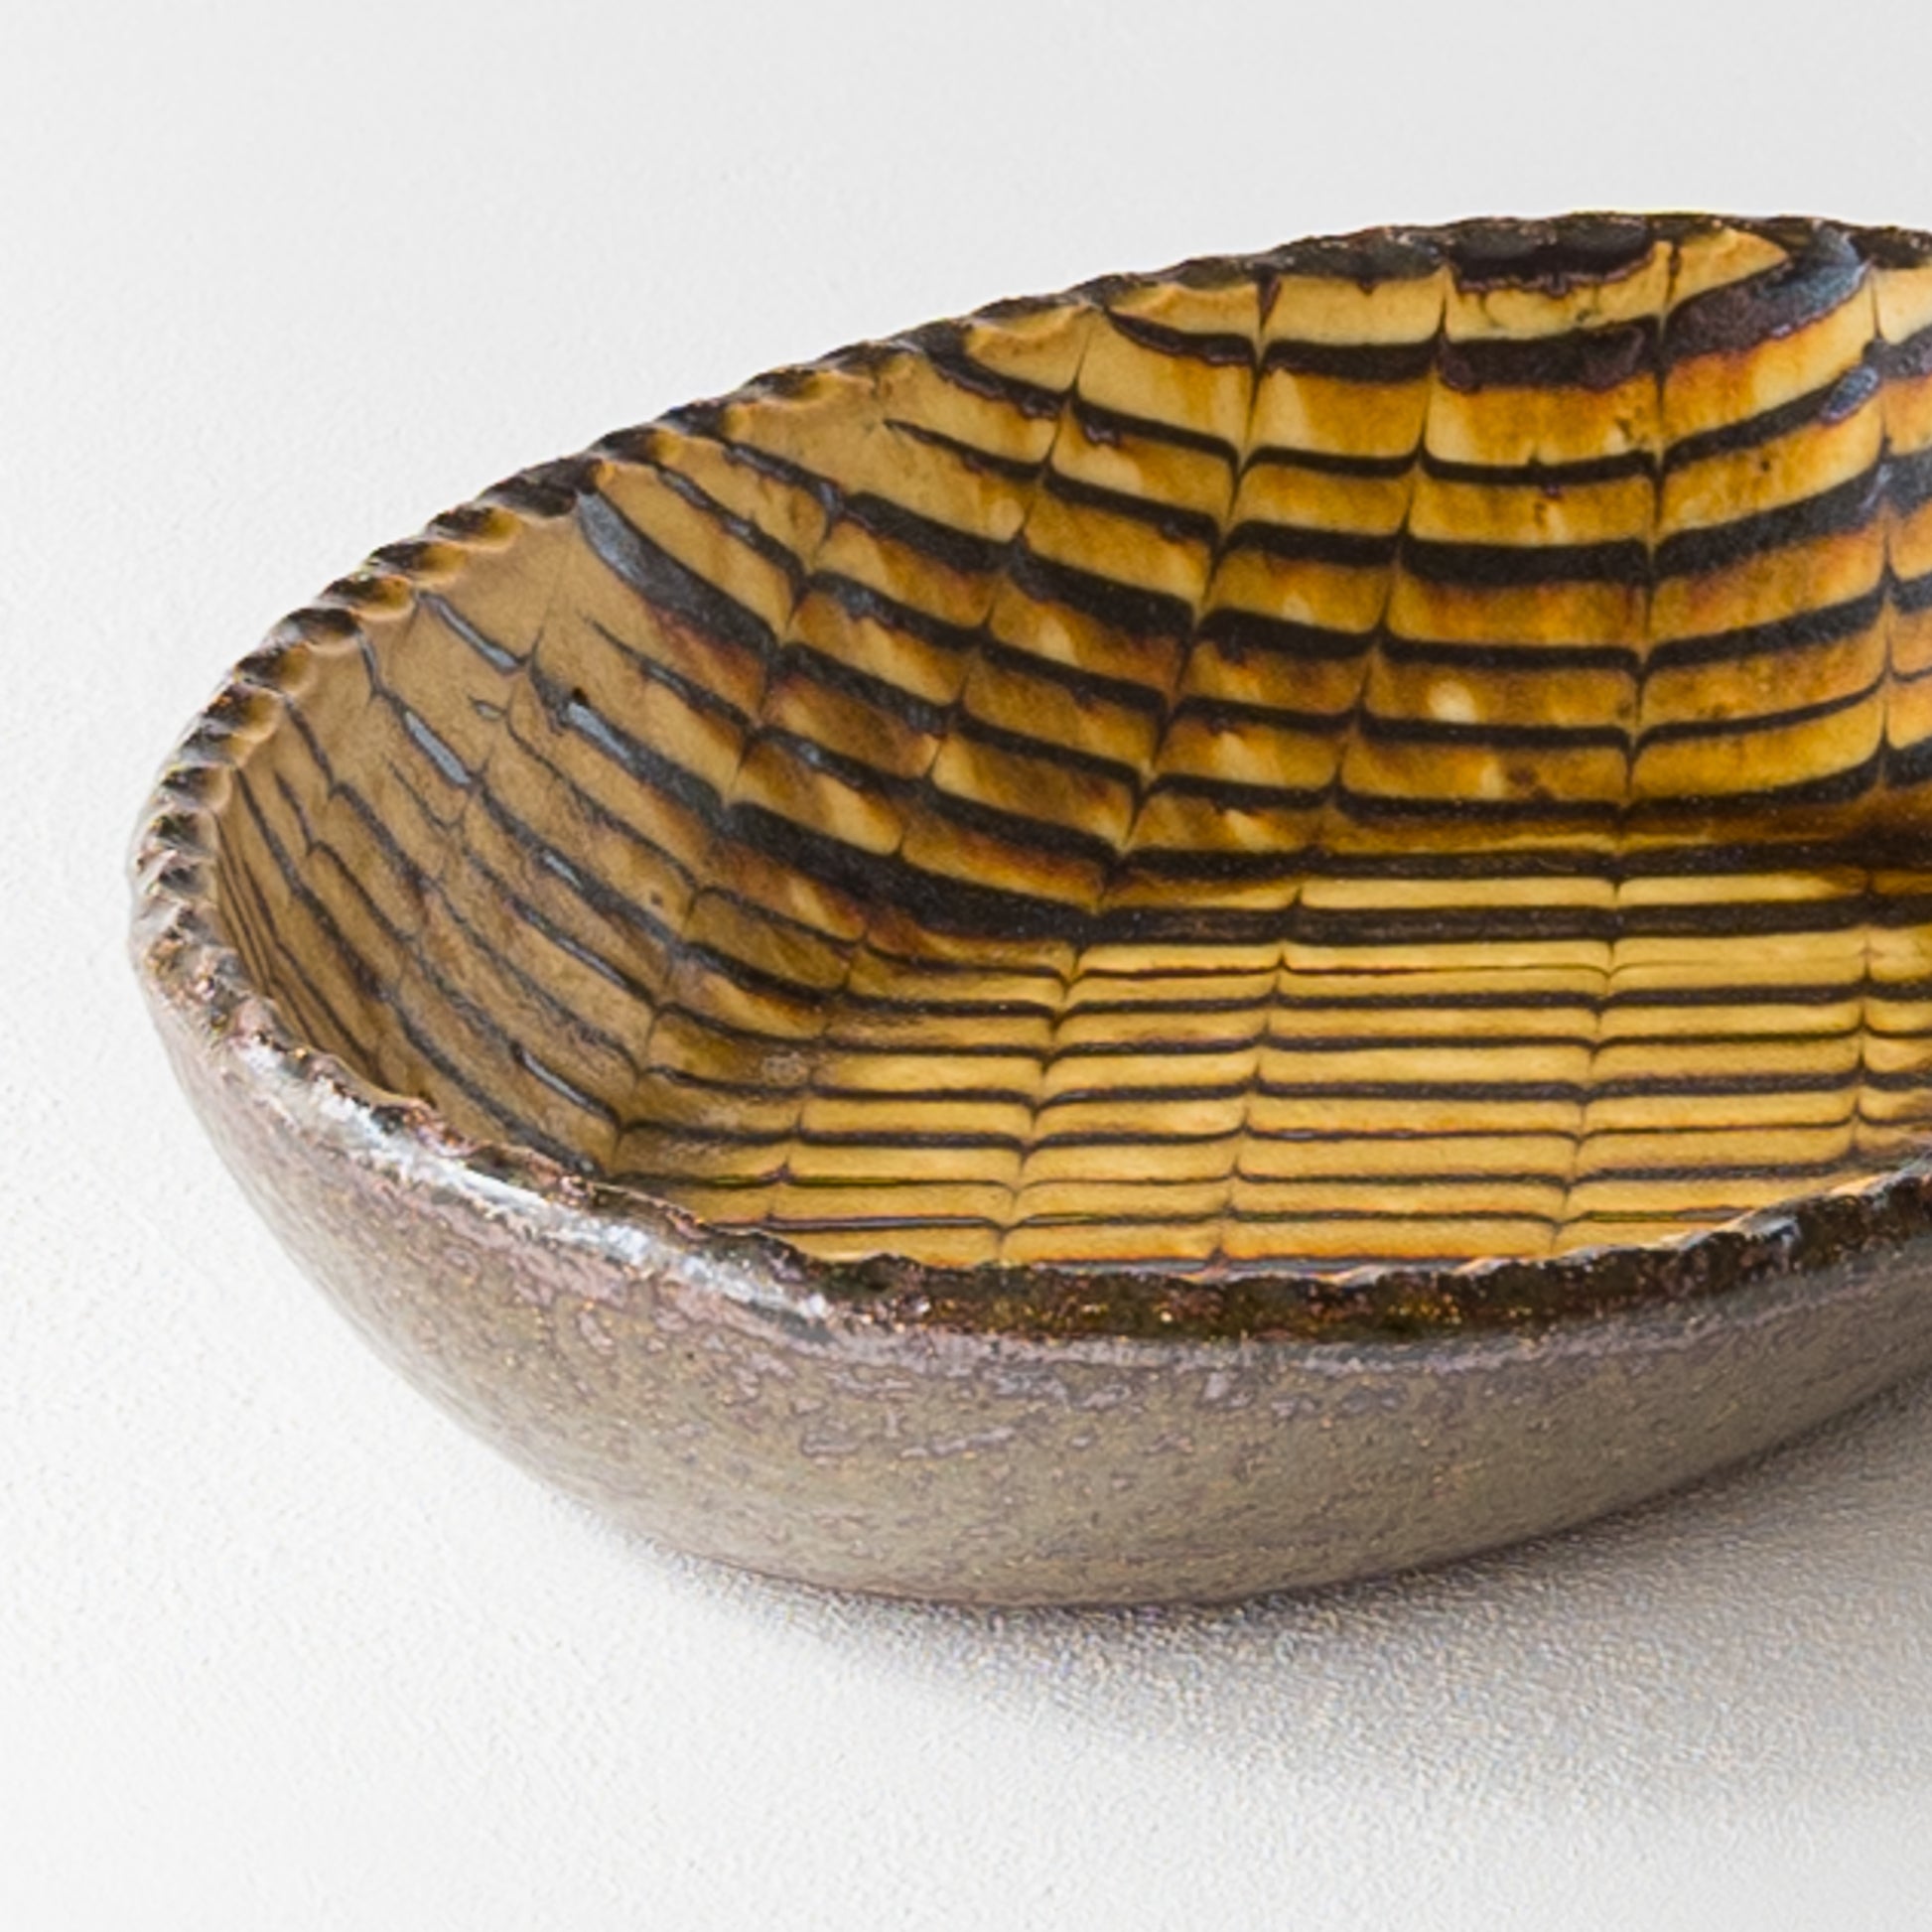 紀窯中川紀夫さんのスリップウェアフェザーコーム楕円鉢